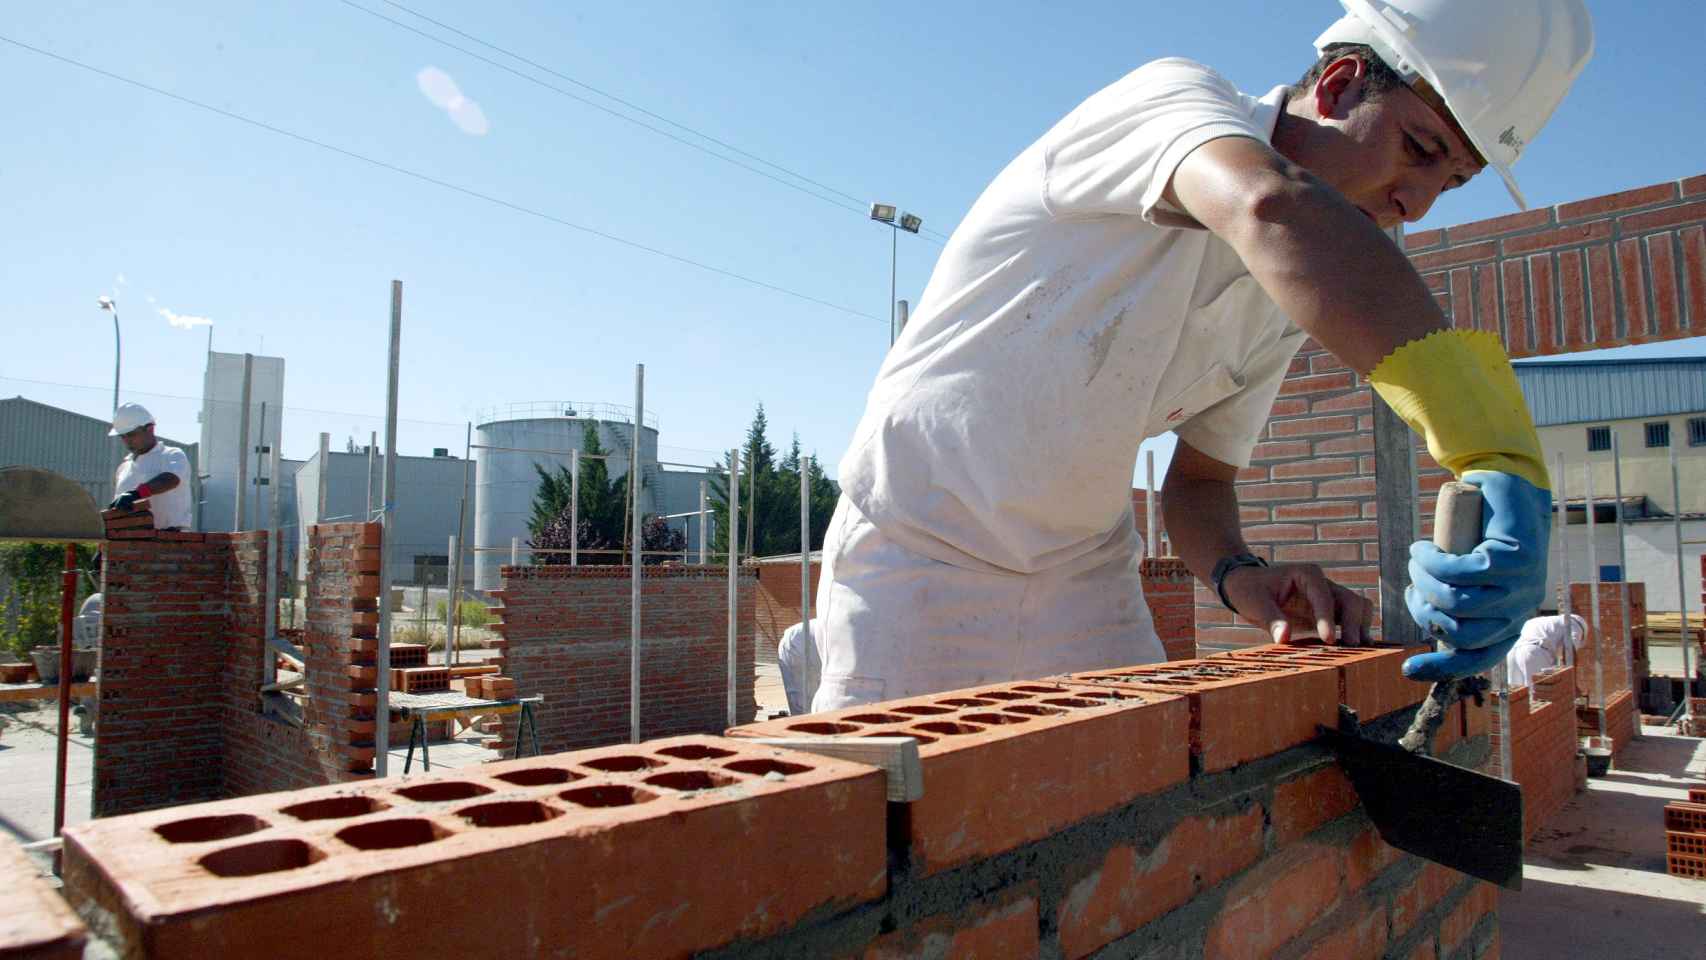 Un trabajador coloca unos ladrillos en una obra